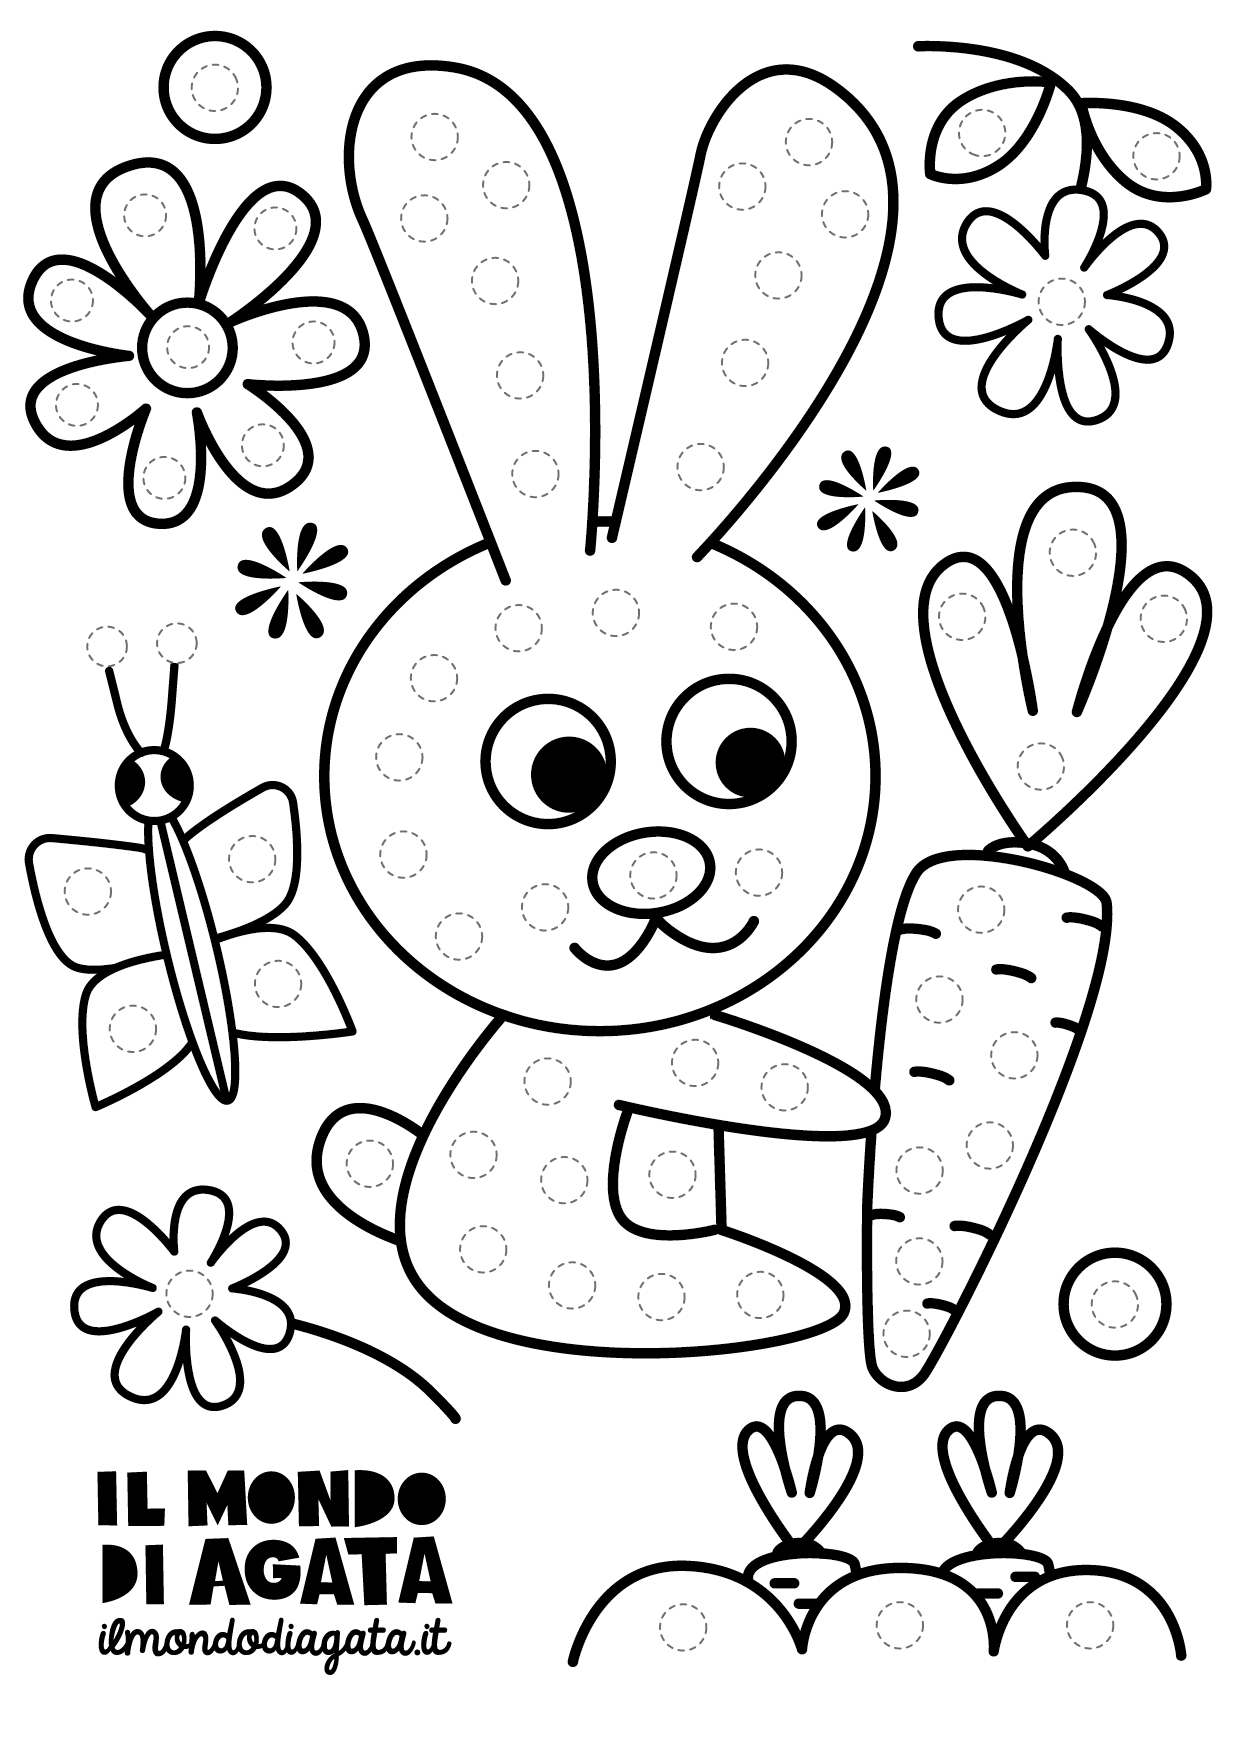 Scarica gratis: Disegni da colorare a pois - coniglietto